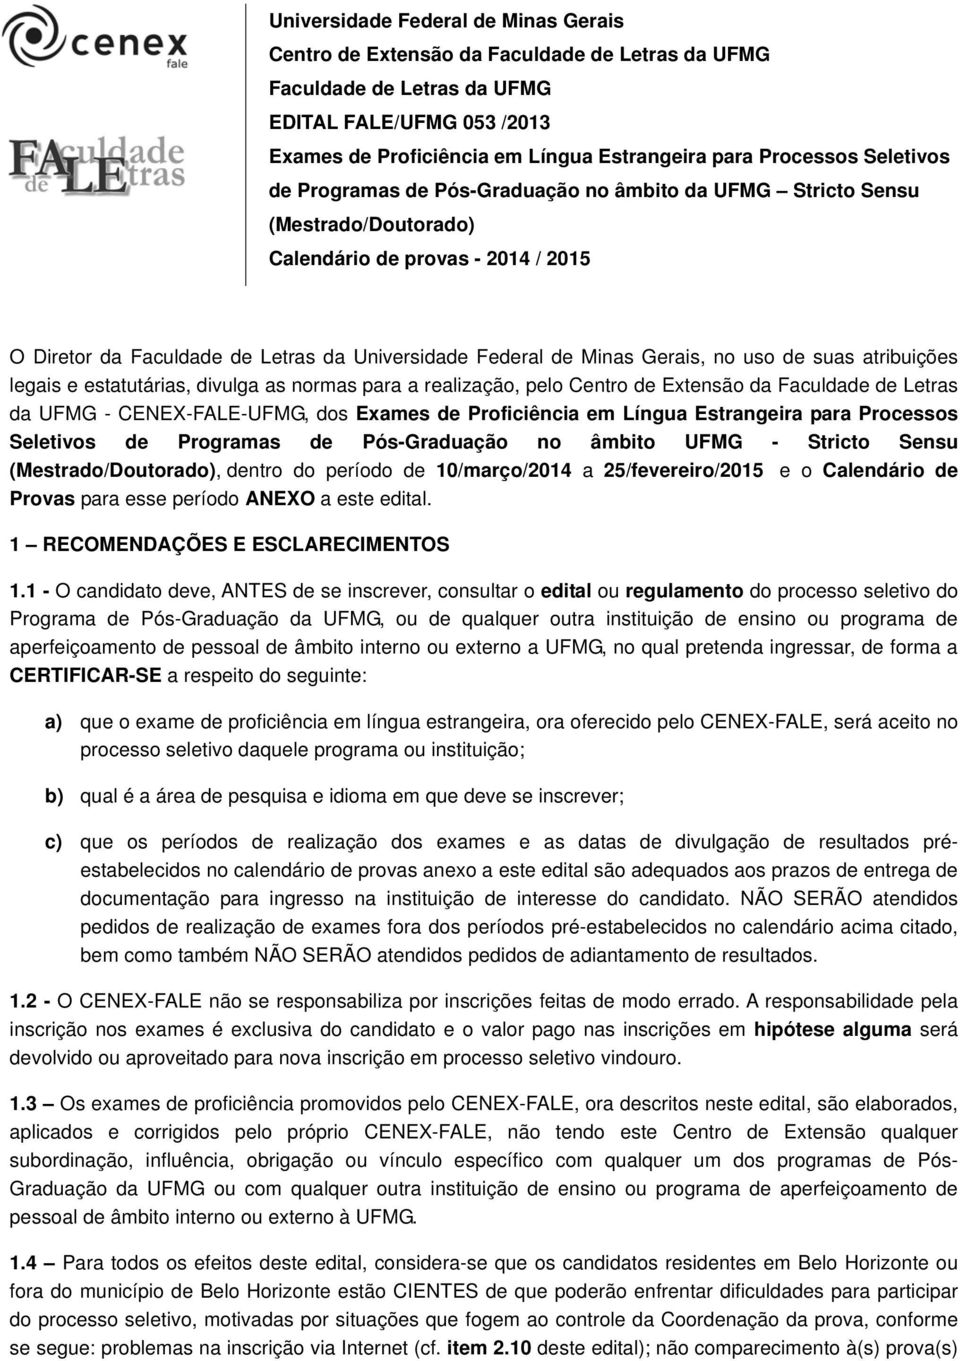 Minas Gerais, no uso de suas atribuições legais e estatutárias, divulga as normas para a realização, pelo Centro de Extensão da Faculdade de Letras da UFMG - CENEX-FALE-UFMG, dos Exames de